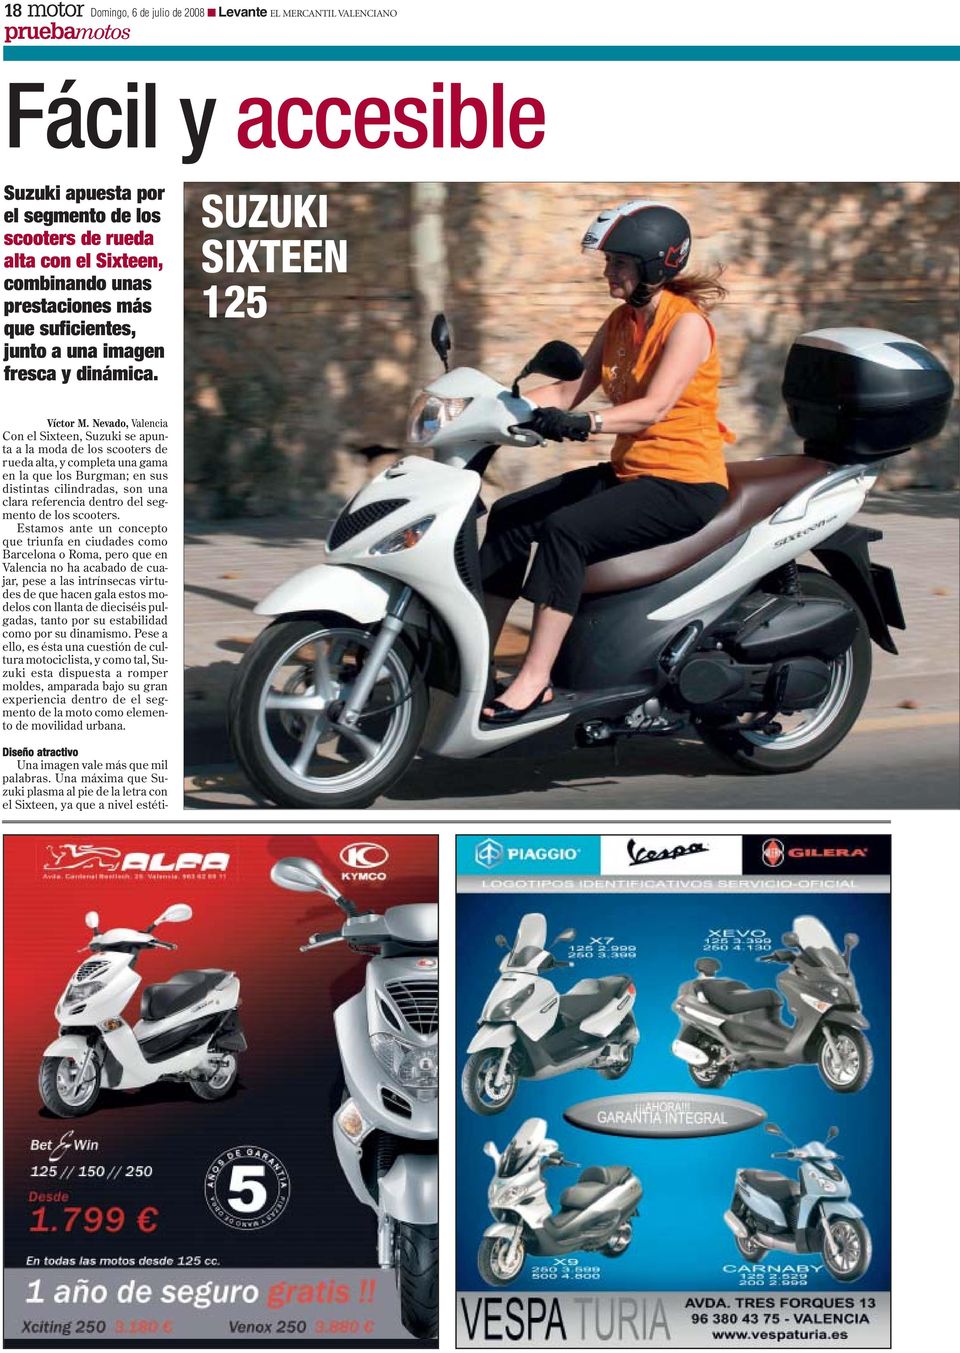 Nevado, Valencia Con el Sixteen, Suzuki se apunta a la moda de los scooters de rueda alta, y completa una gama en la que los Burgman; en sus distintas cilindradas, son una clara referencia dentro del